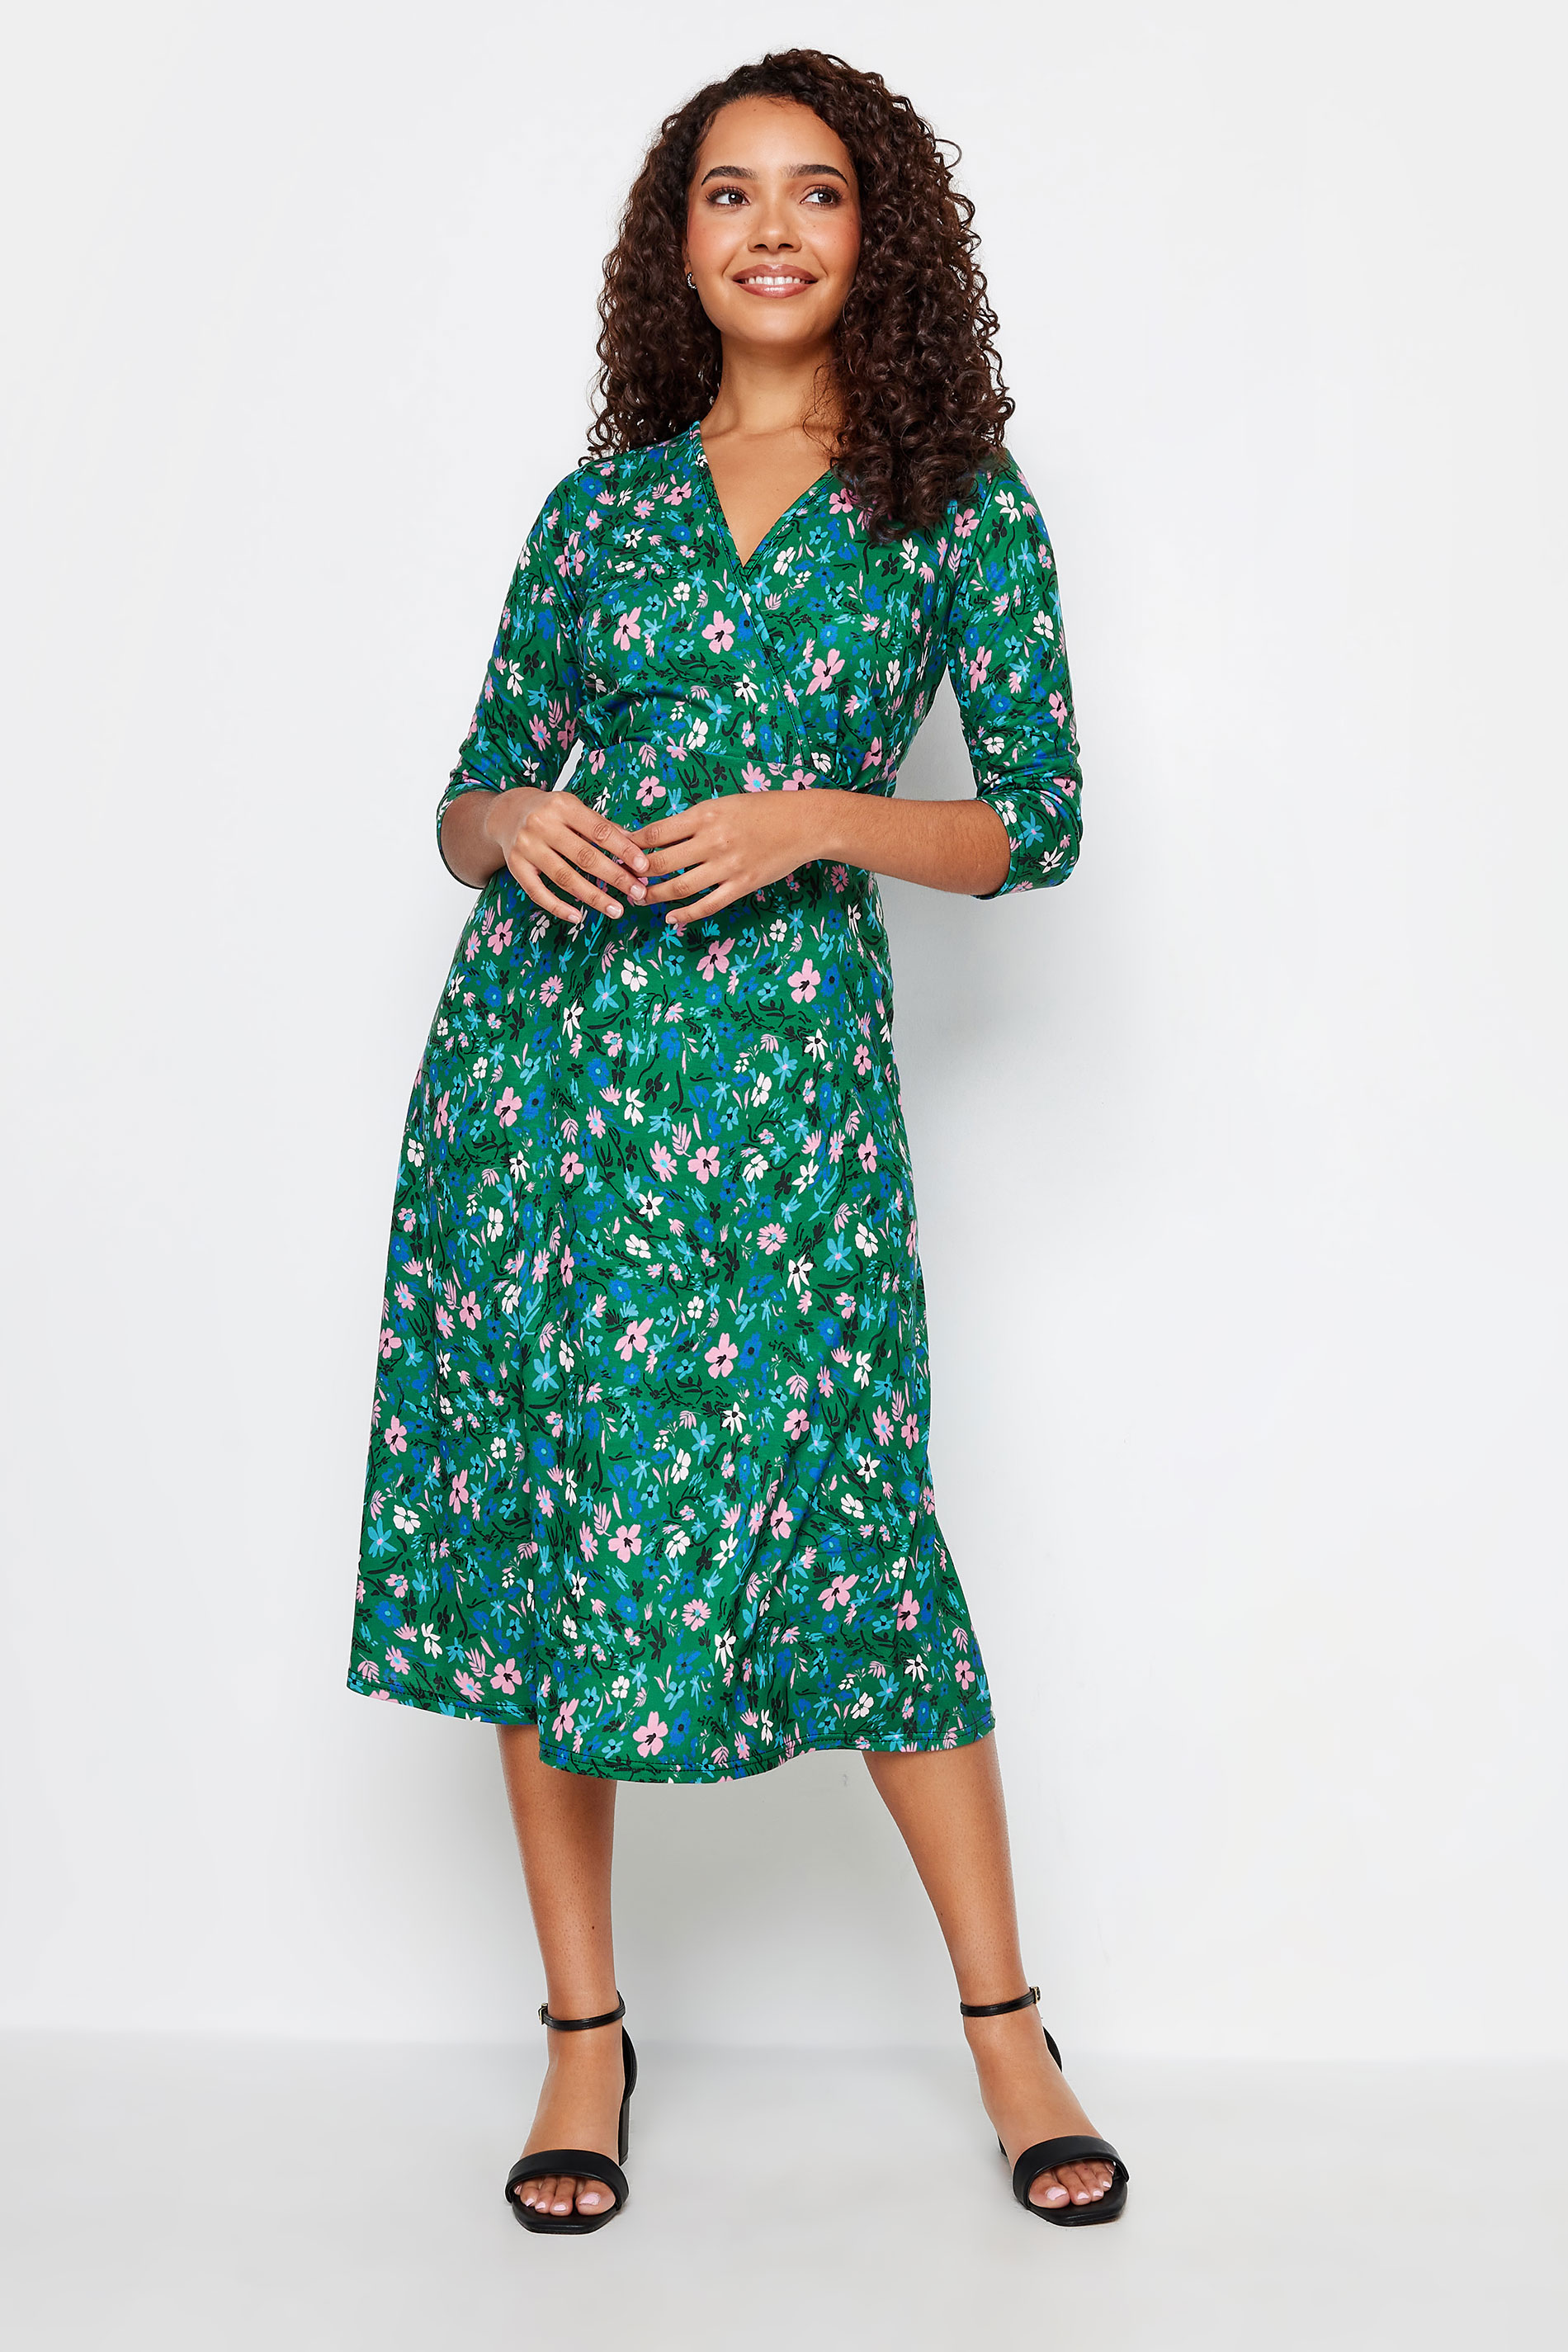 M&Co Green Floral Print Wrap Dress | M&Co